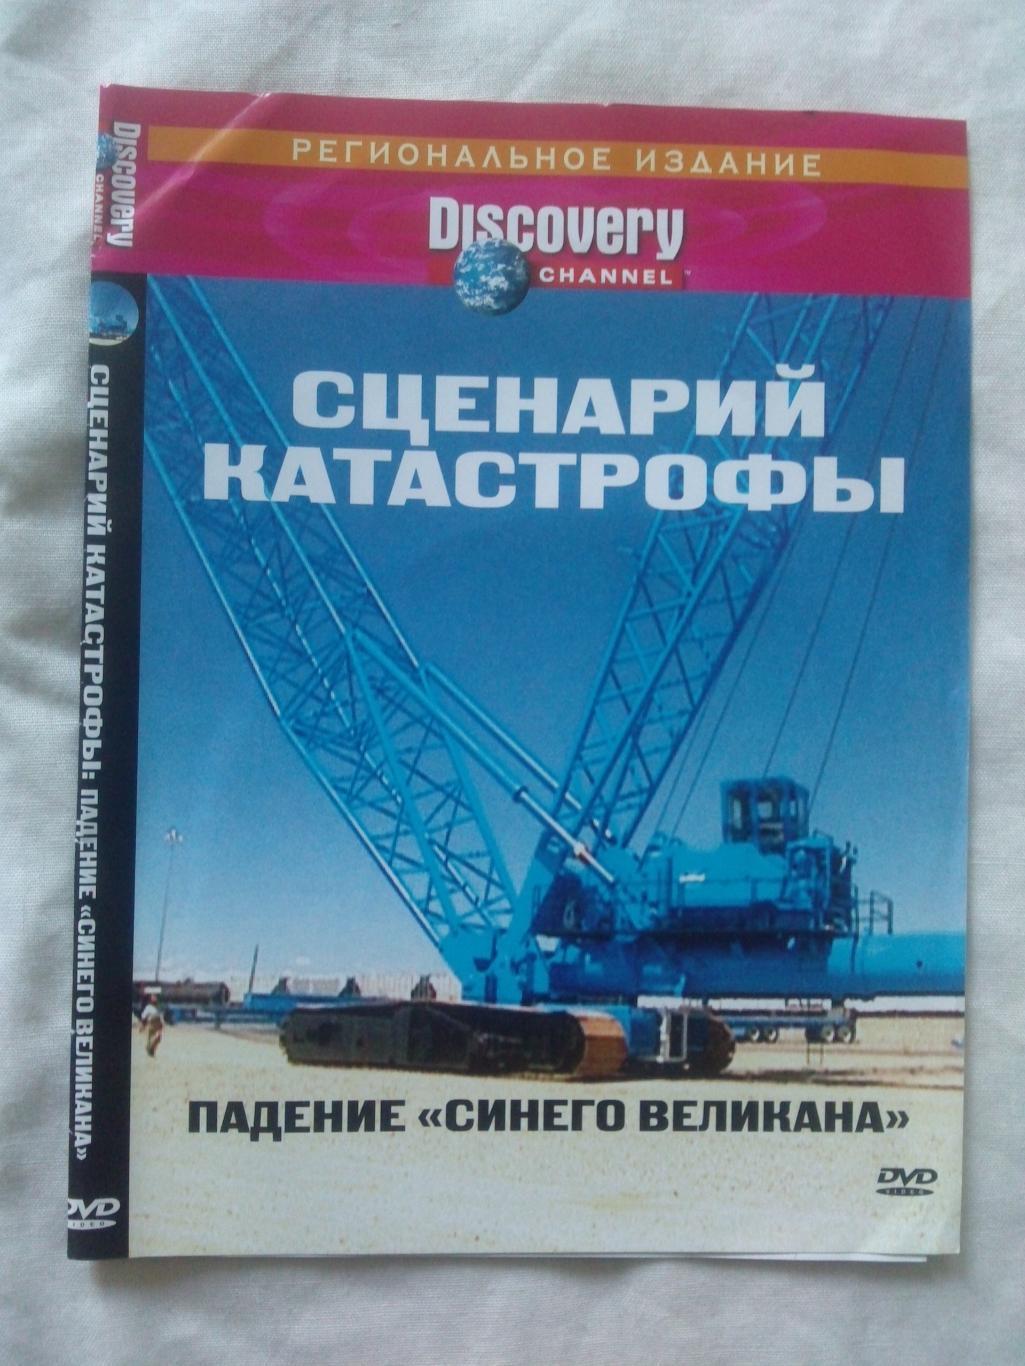 DVD Discovery : Падение Синего великана (Катастрофа , авария) лицензия (новый)